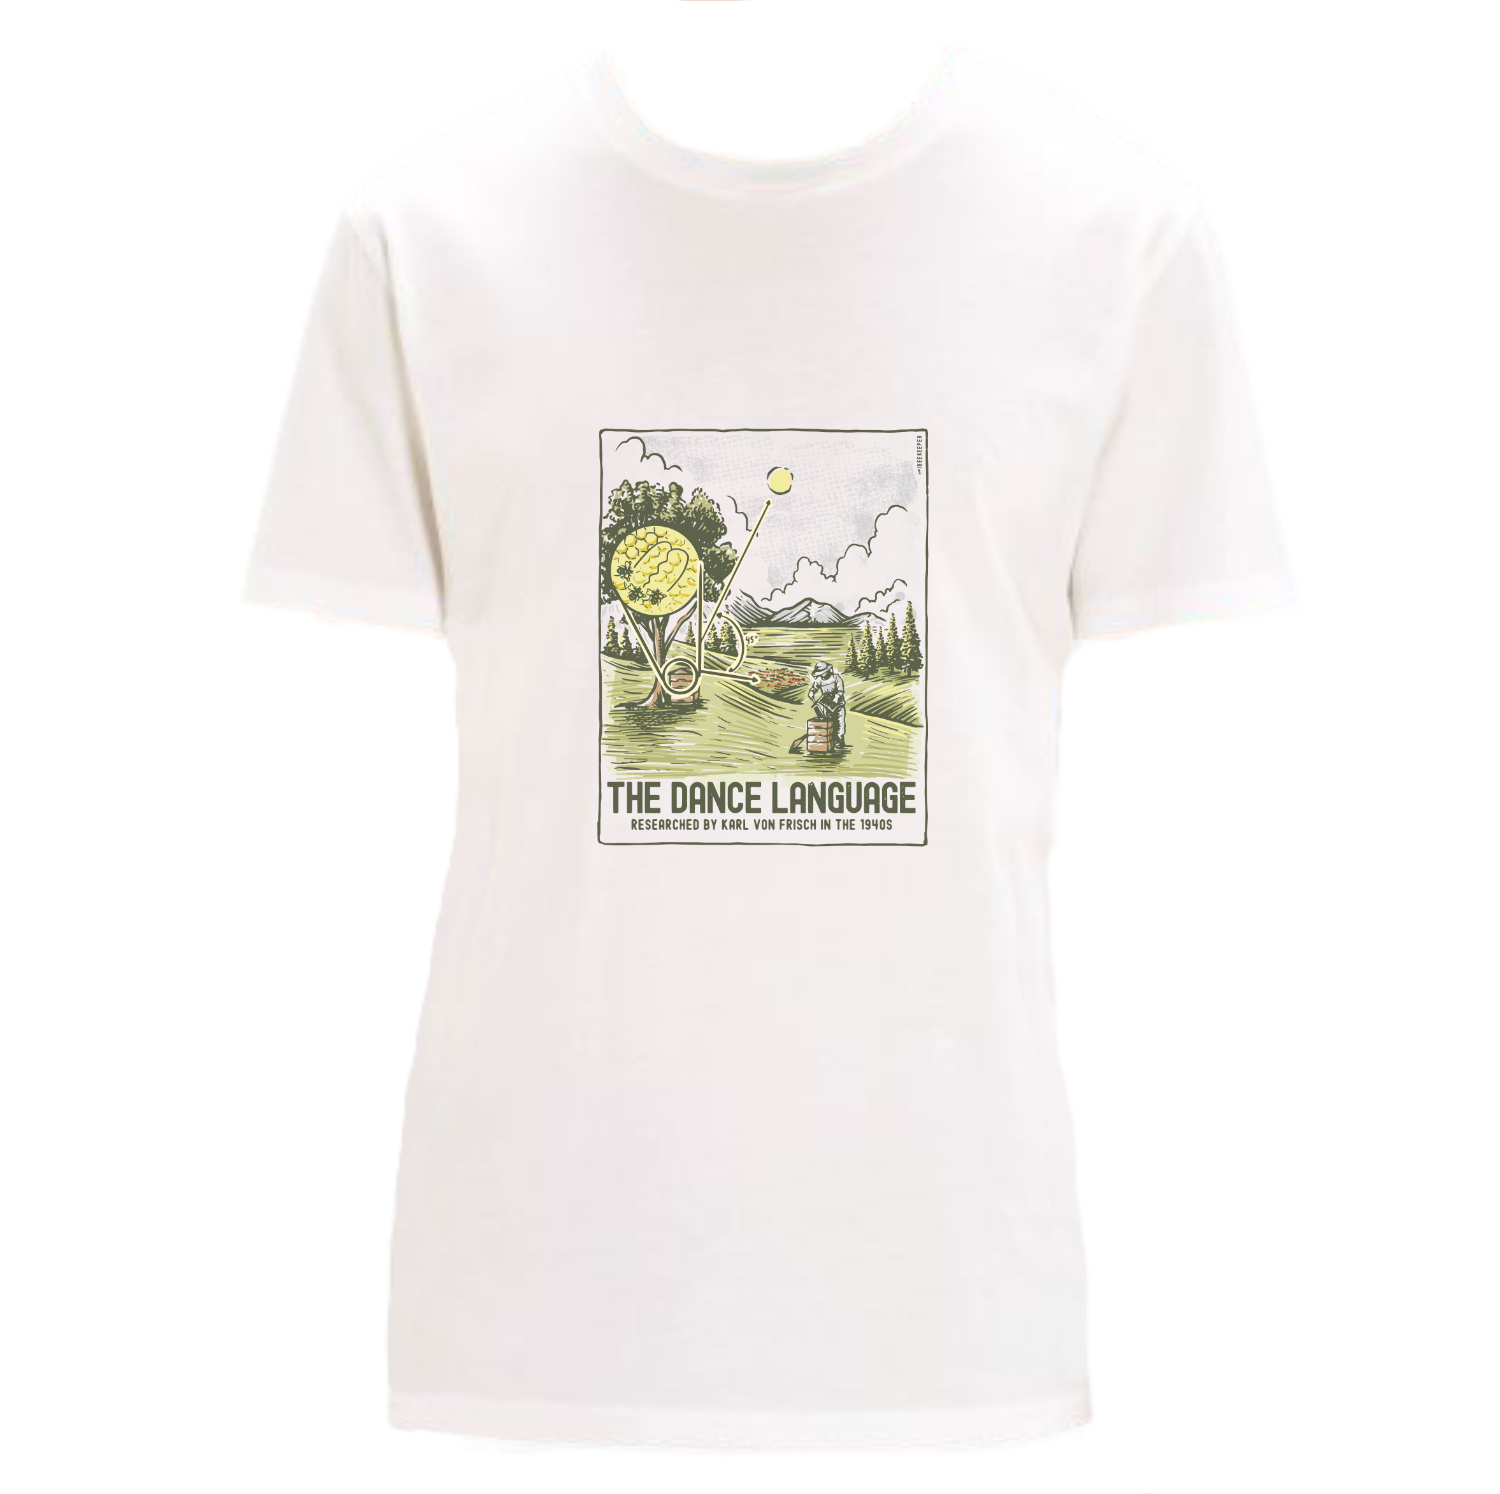 Premium Imker T-Shirt "Die Tanzsprache" aus Bio Baumwolle